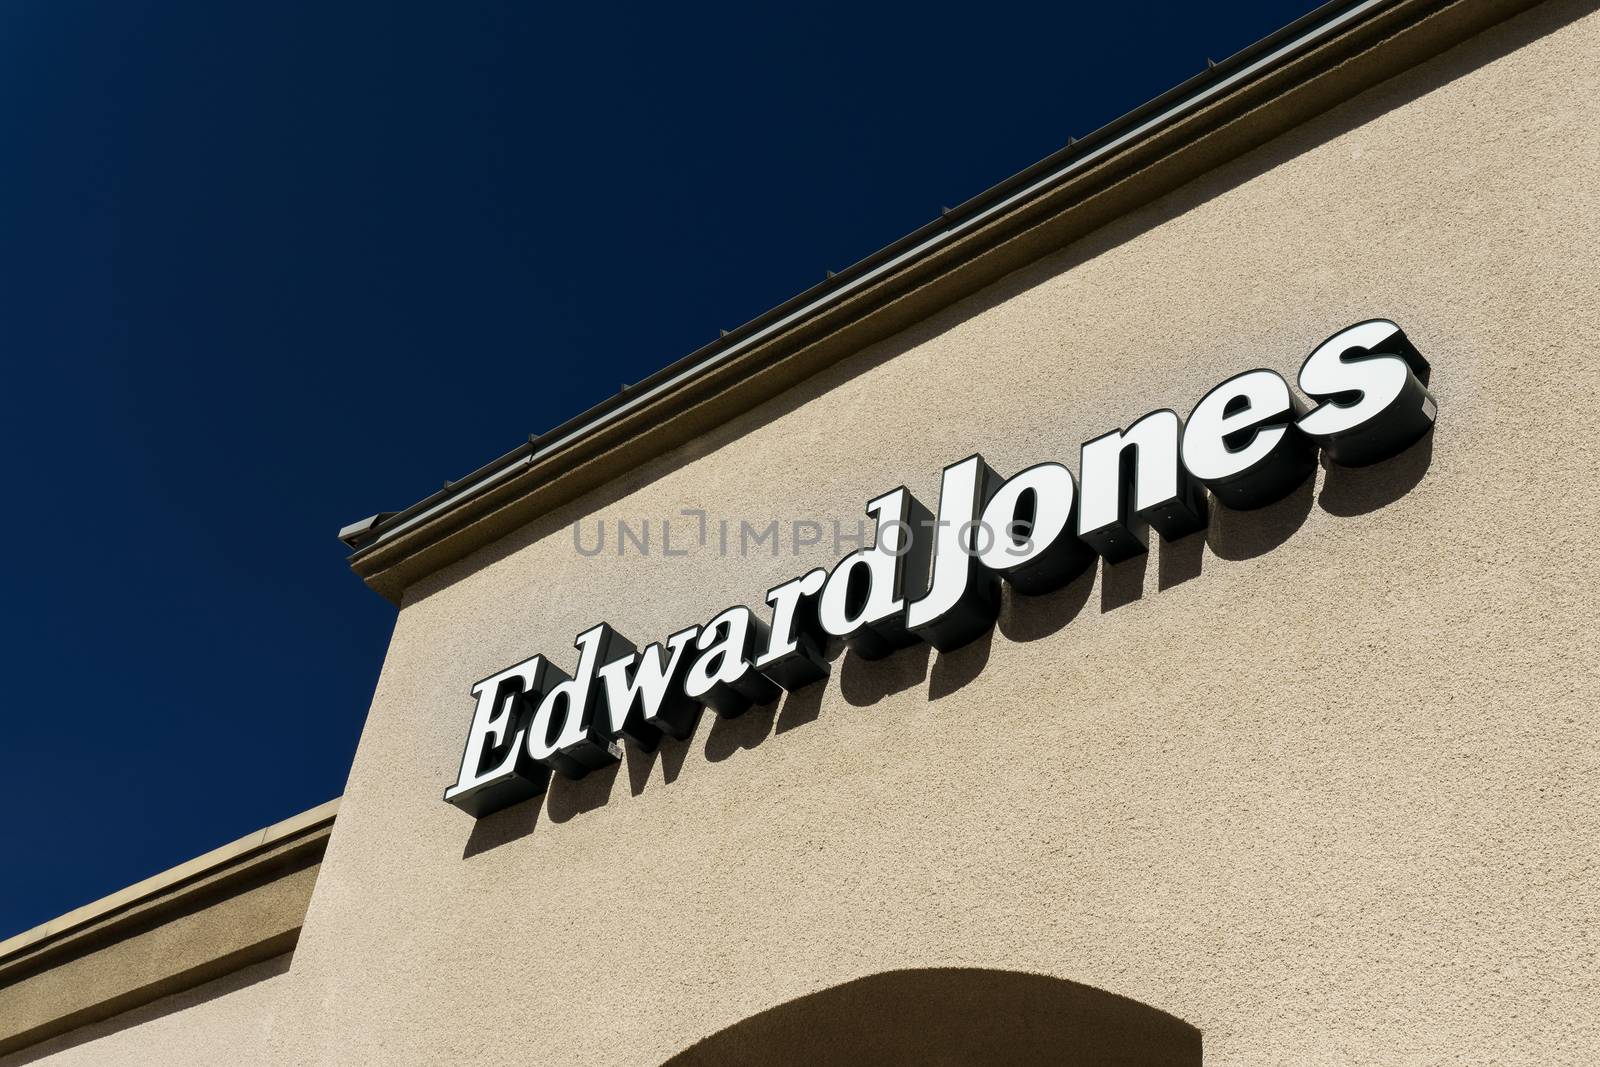 GRANADA HILLS,CA/USA - OCTOBER 30, 2015: Edward Jones exterior and logo. Edward D. Jones & Company is a financial services firm.